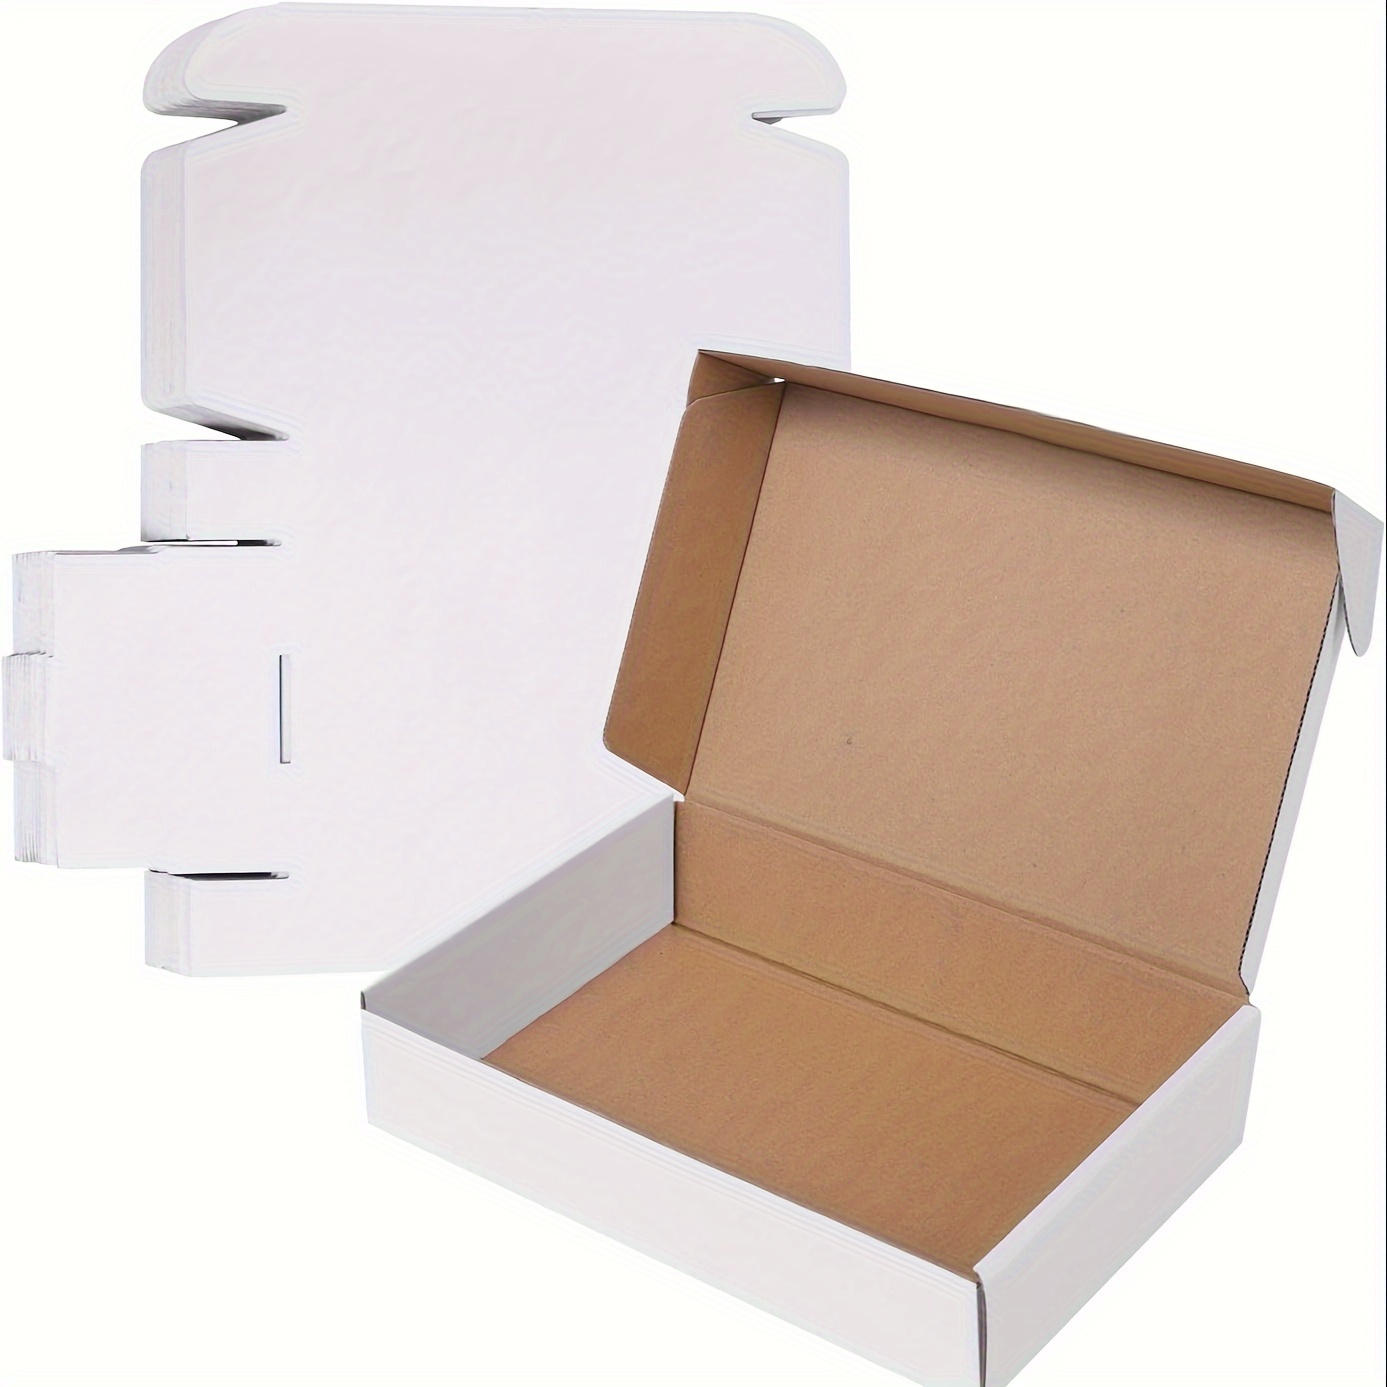 [ Pack de 10 ] Caja de Carton Plegable Multiuso para Mudanza Embalaje Envio  Paquete Almacenaje Guarda Todos de 40x30x25 30L, 50x35x30 50L, 60x40x40  95L, 80x40x40 125L